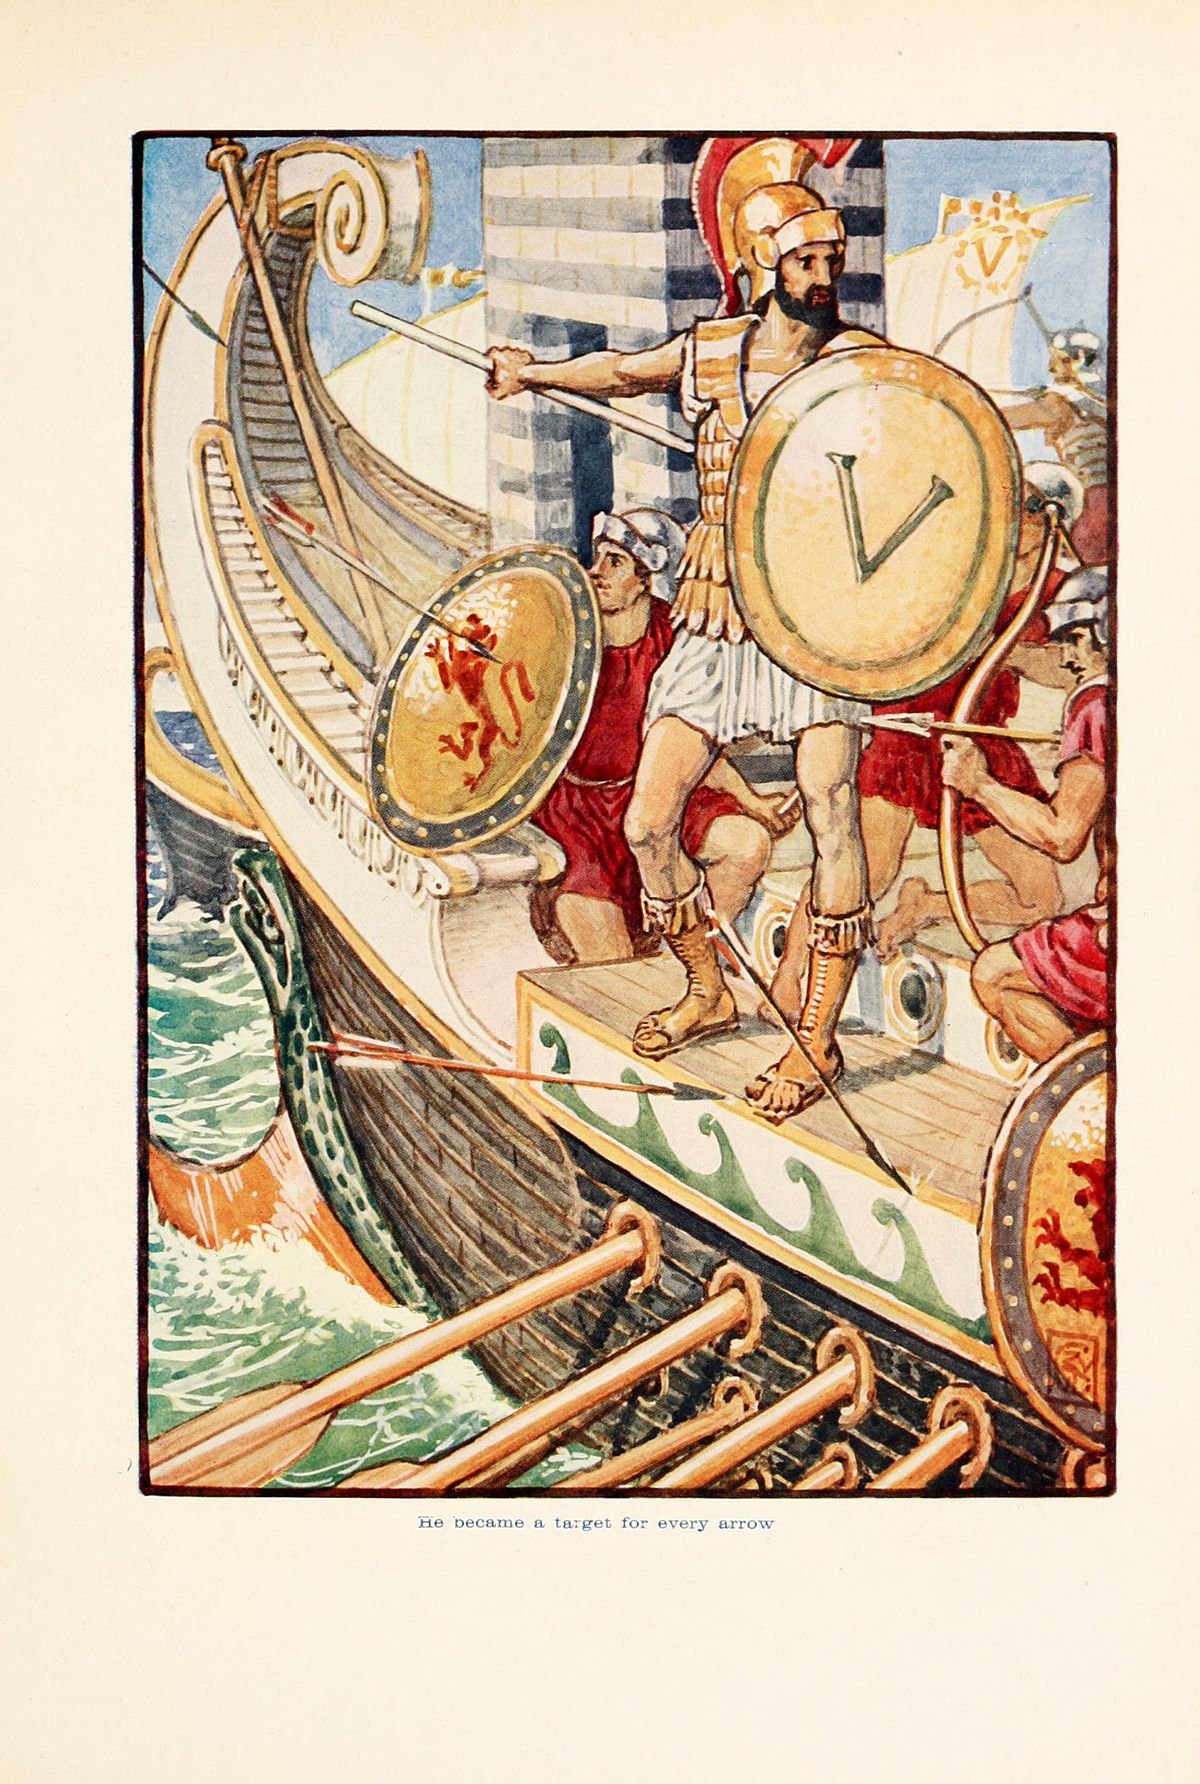 O heroísmo e os valores obscuros de Esparta, a máquina de guerra da Grécia  Antiga - BBC News Brasil